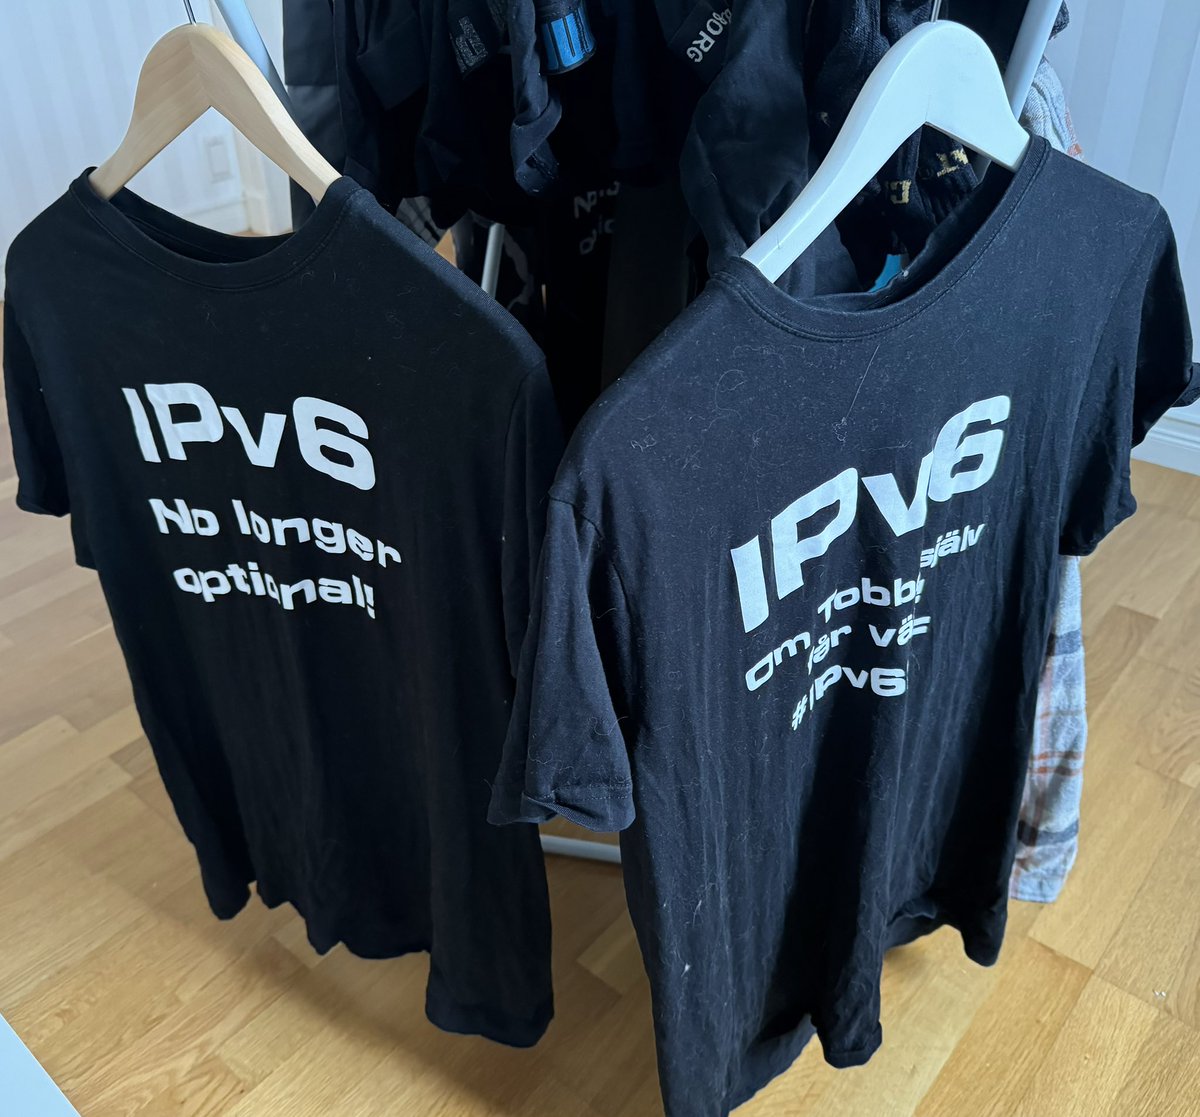 Sunday #IPv6 laundry